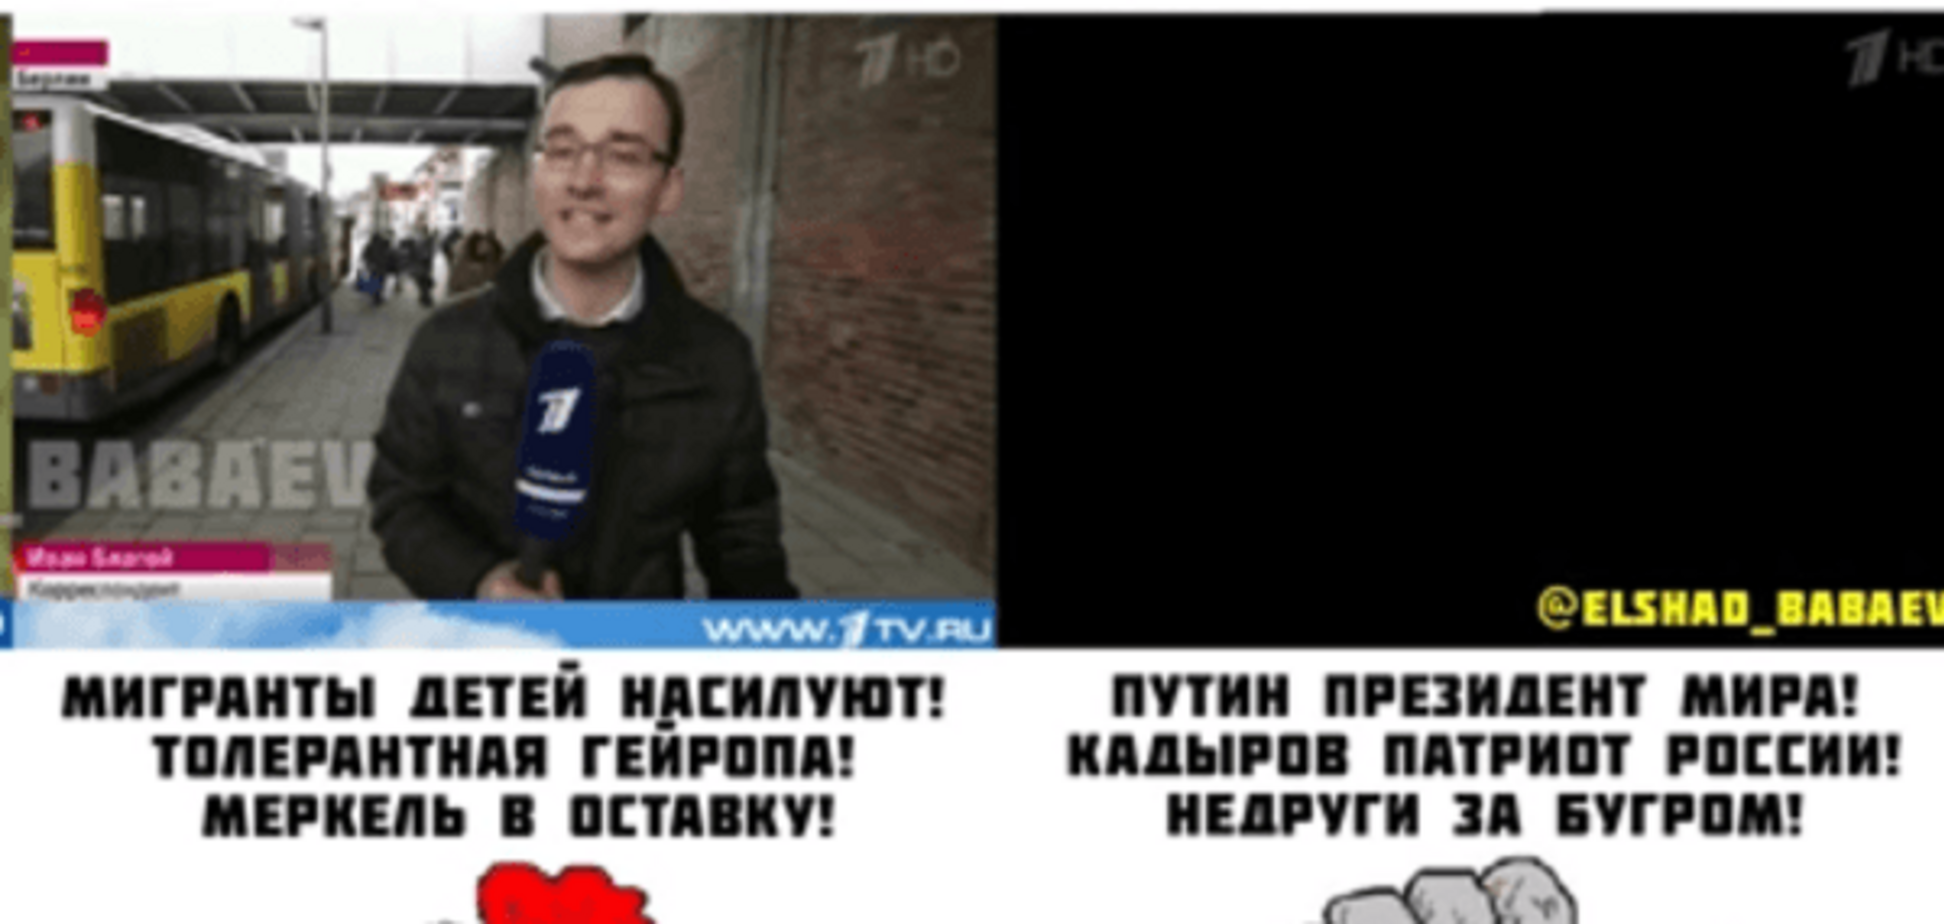 'Это вам не распятые мальчики': в России позвонили на ТВ из-за убийства ребенка. Видеофакт